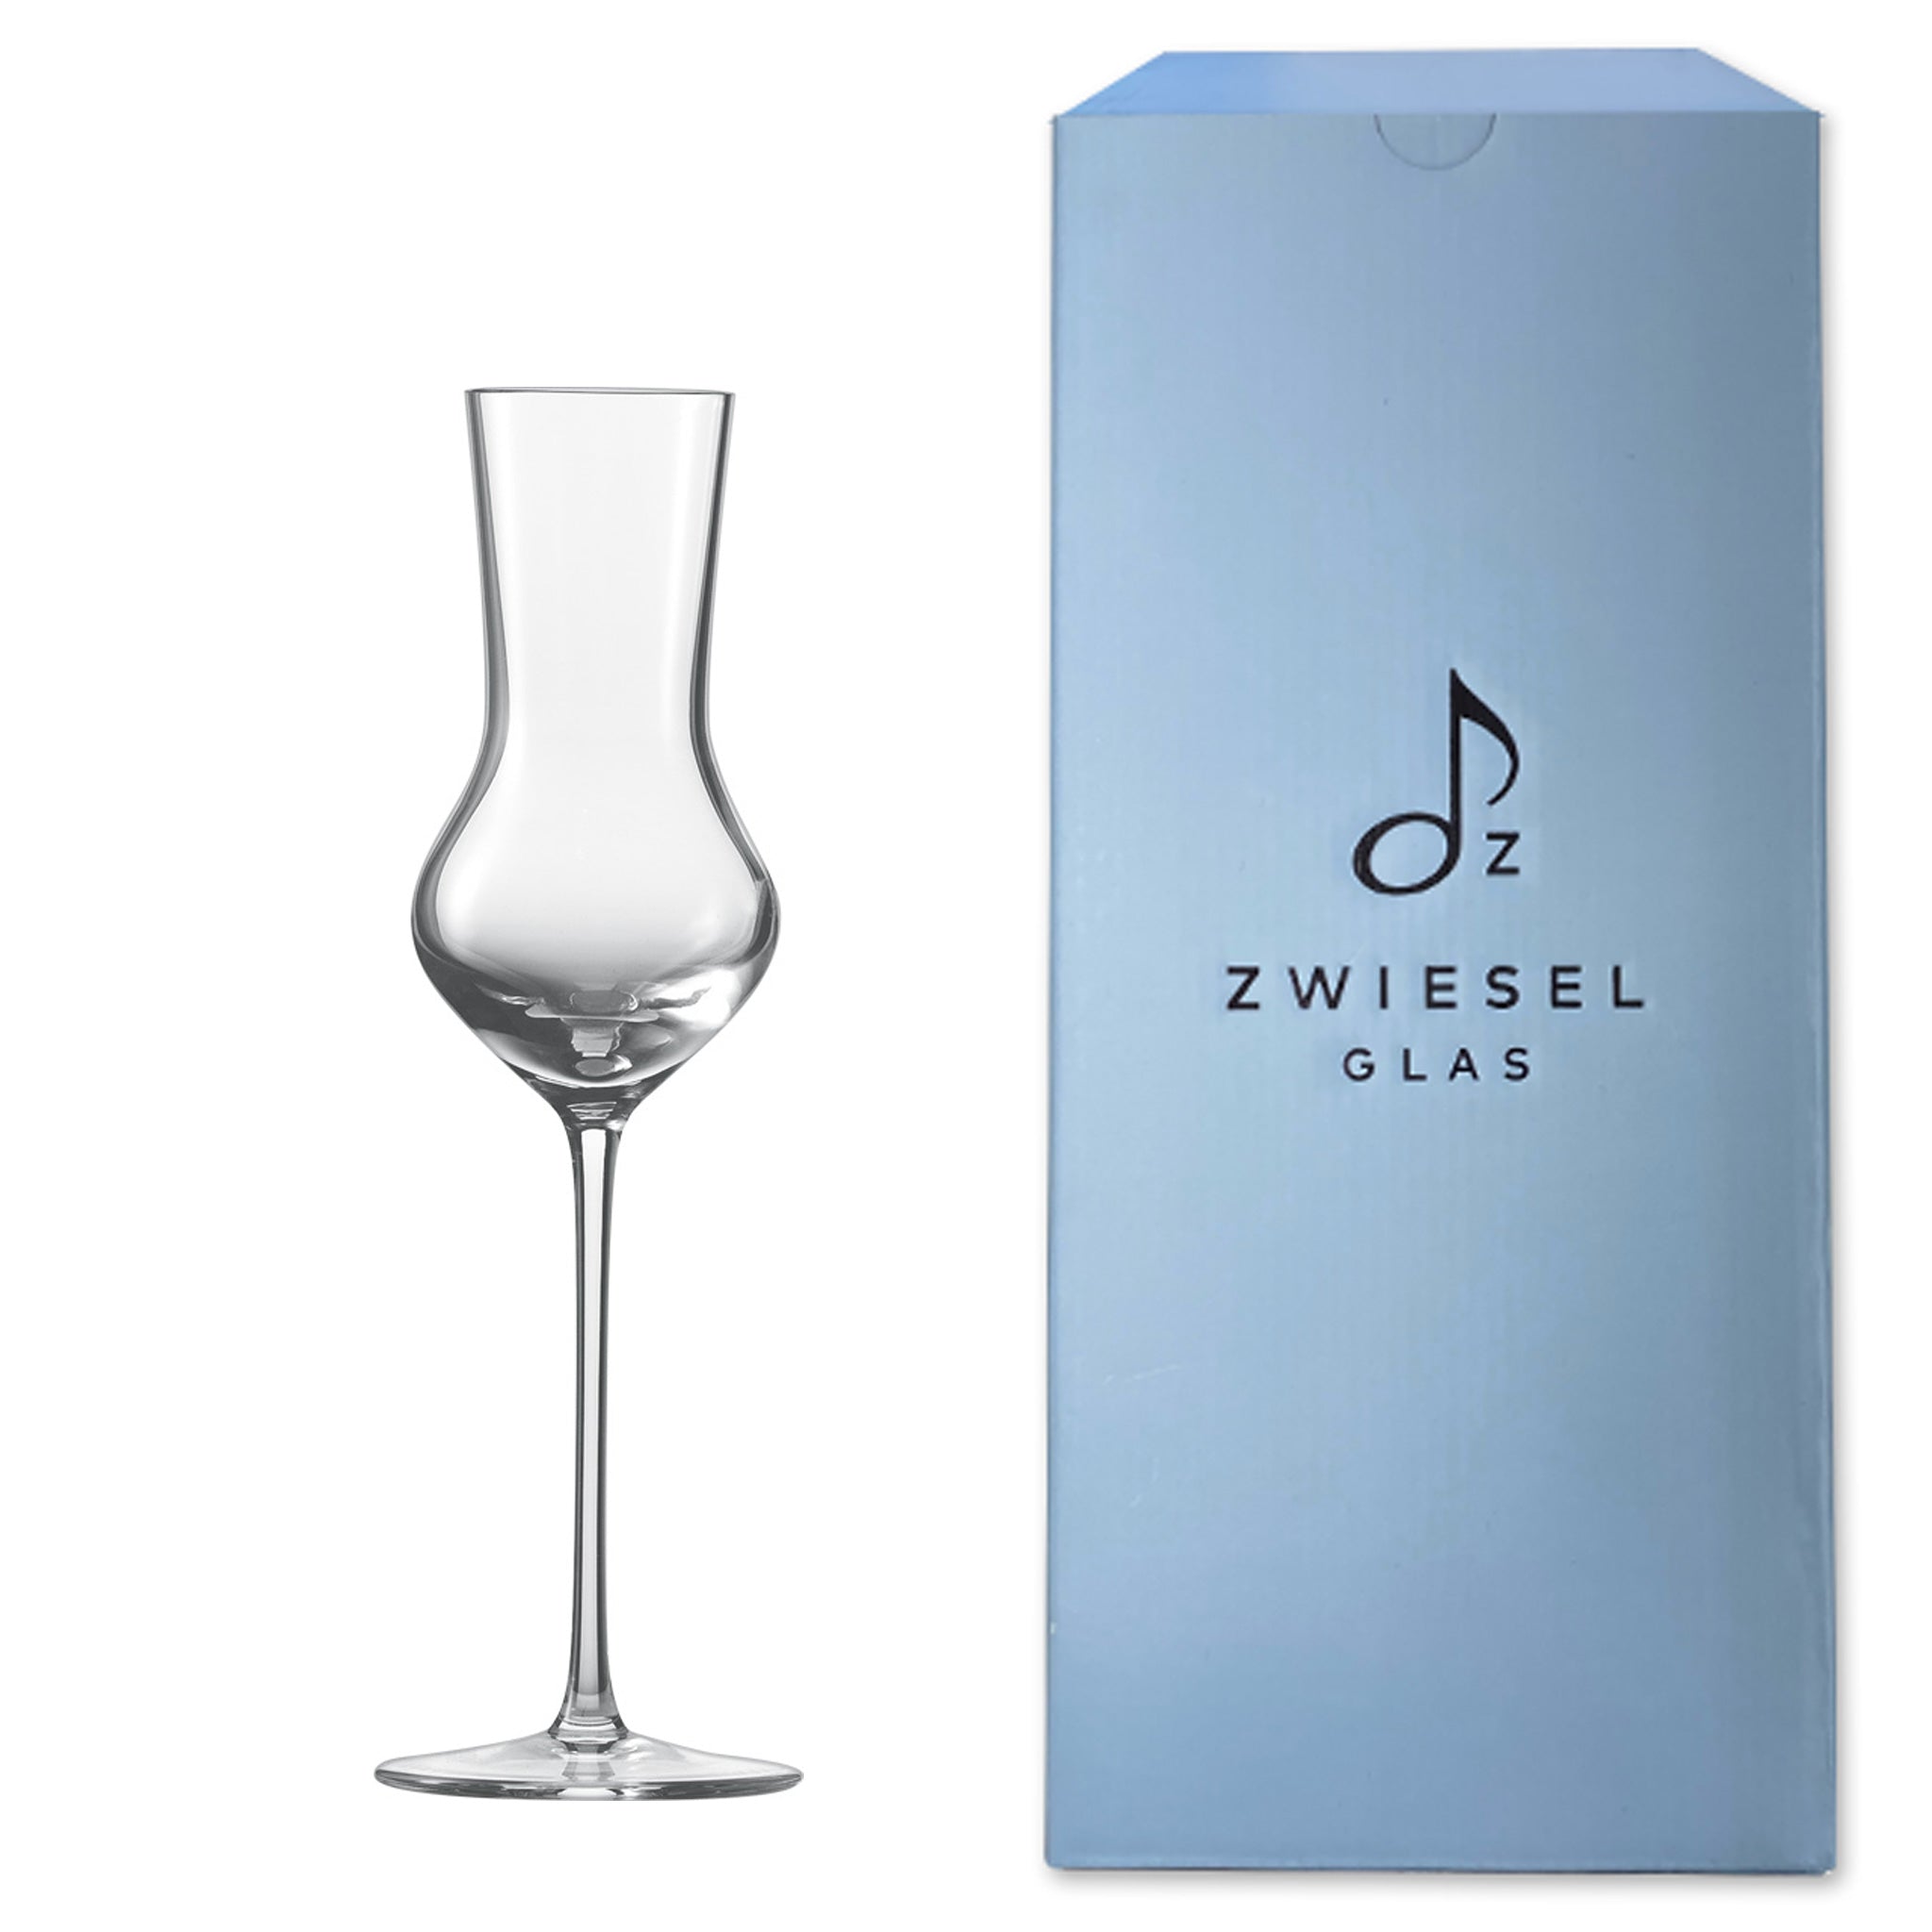 ZWIESEL GLAS Handmade（ツヴィーゼル グラス ハンドメイド）| ツヴィーゼル公式サイト – ツヴィーゼル・ジャパン